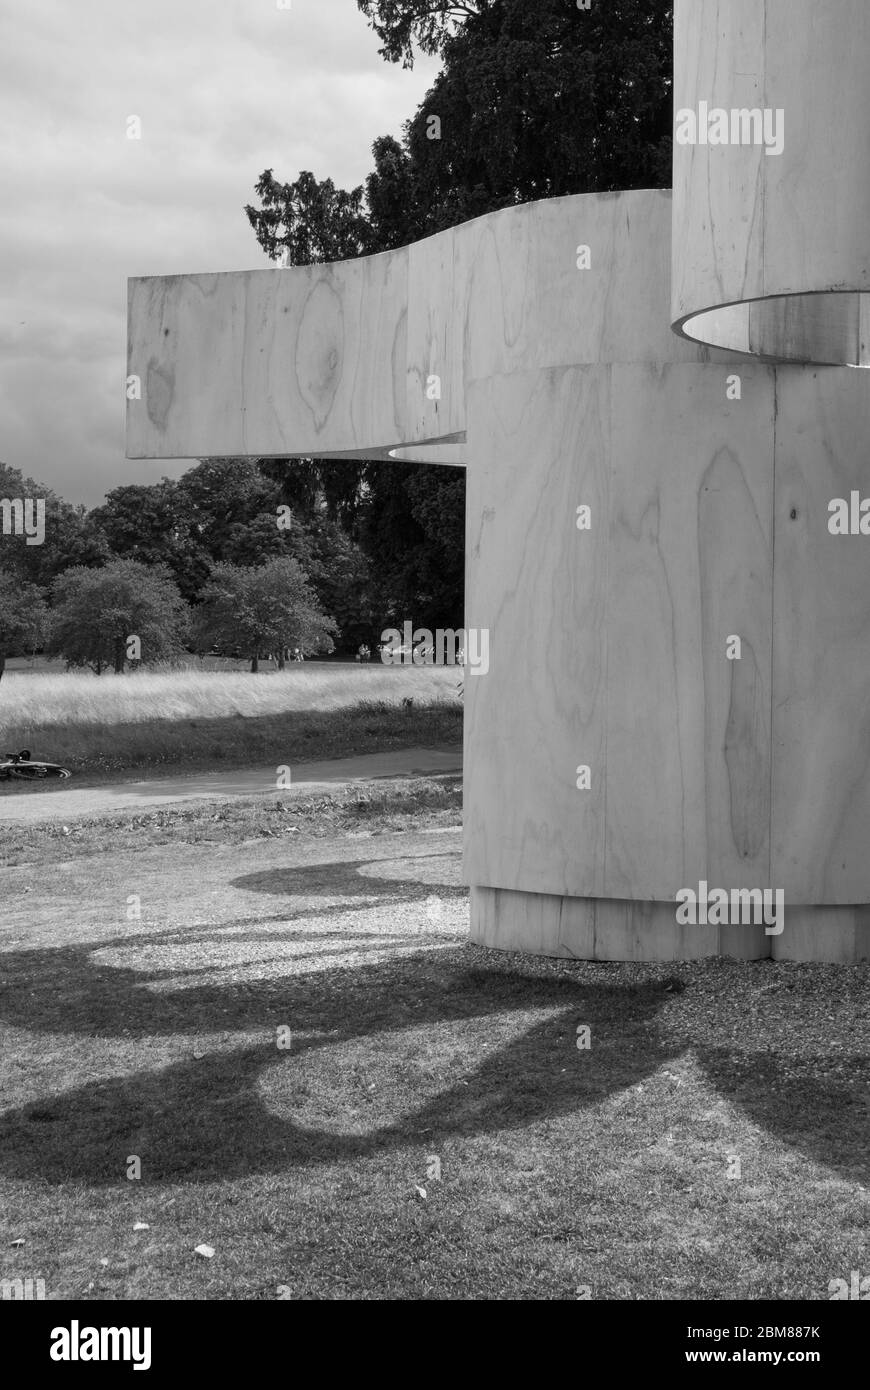 Maison d'été Timber Steam Bent contreplaqué Pavillon Serpentine Galleries Serpentine Pavilion 2016, Kensington Gardens, Londres, W2 par Barkow Leibinger Banque D'Images